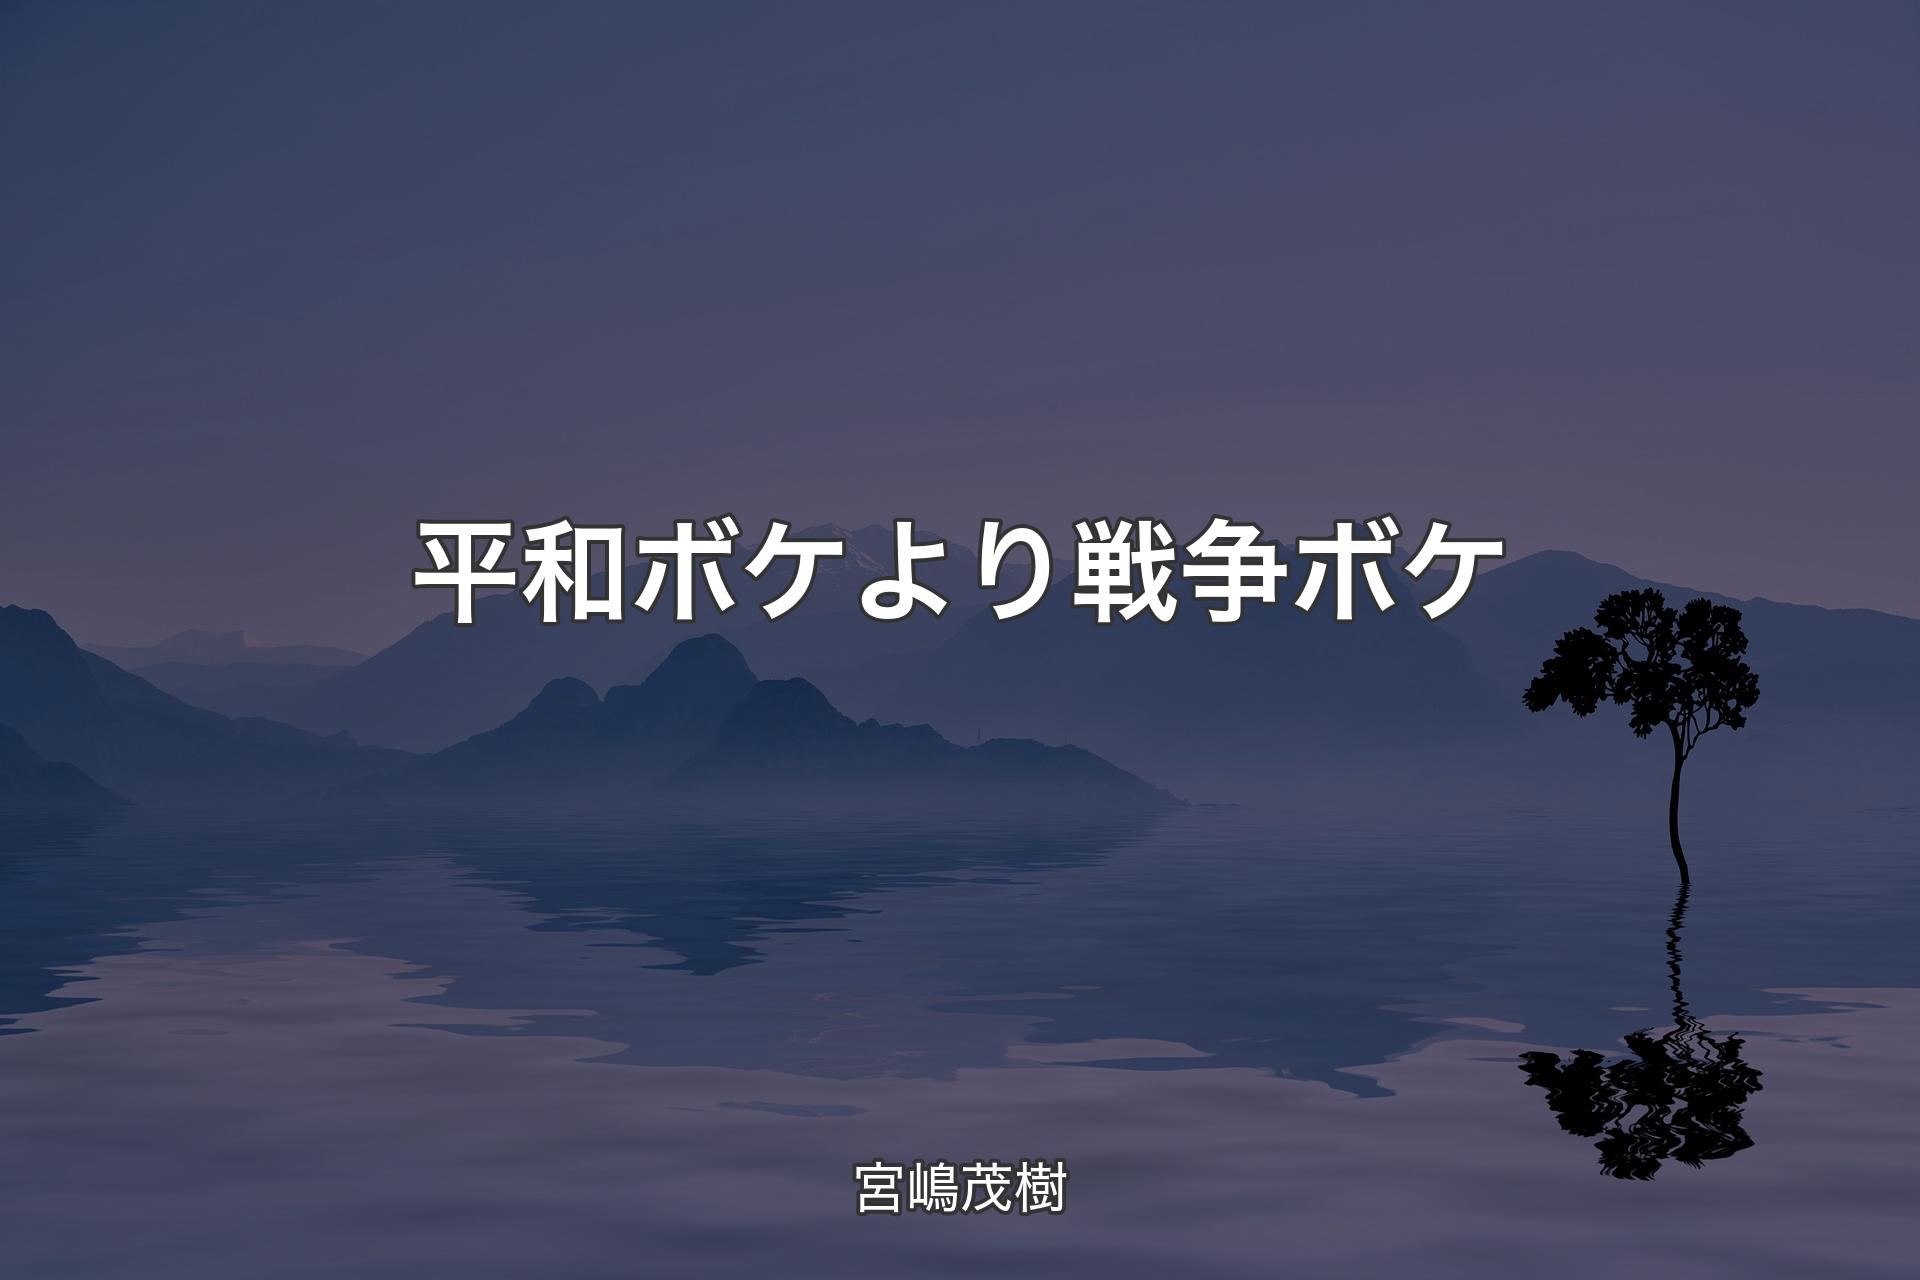 【背景4】平和ボケより 戦争ボケ - 宮嶋茂樹